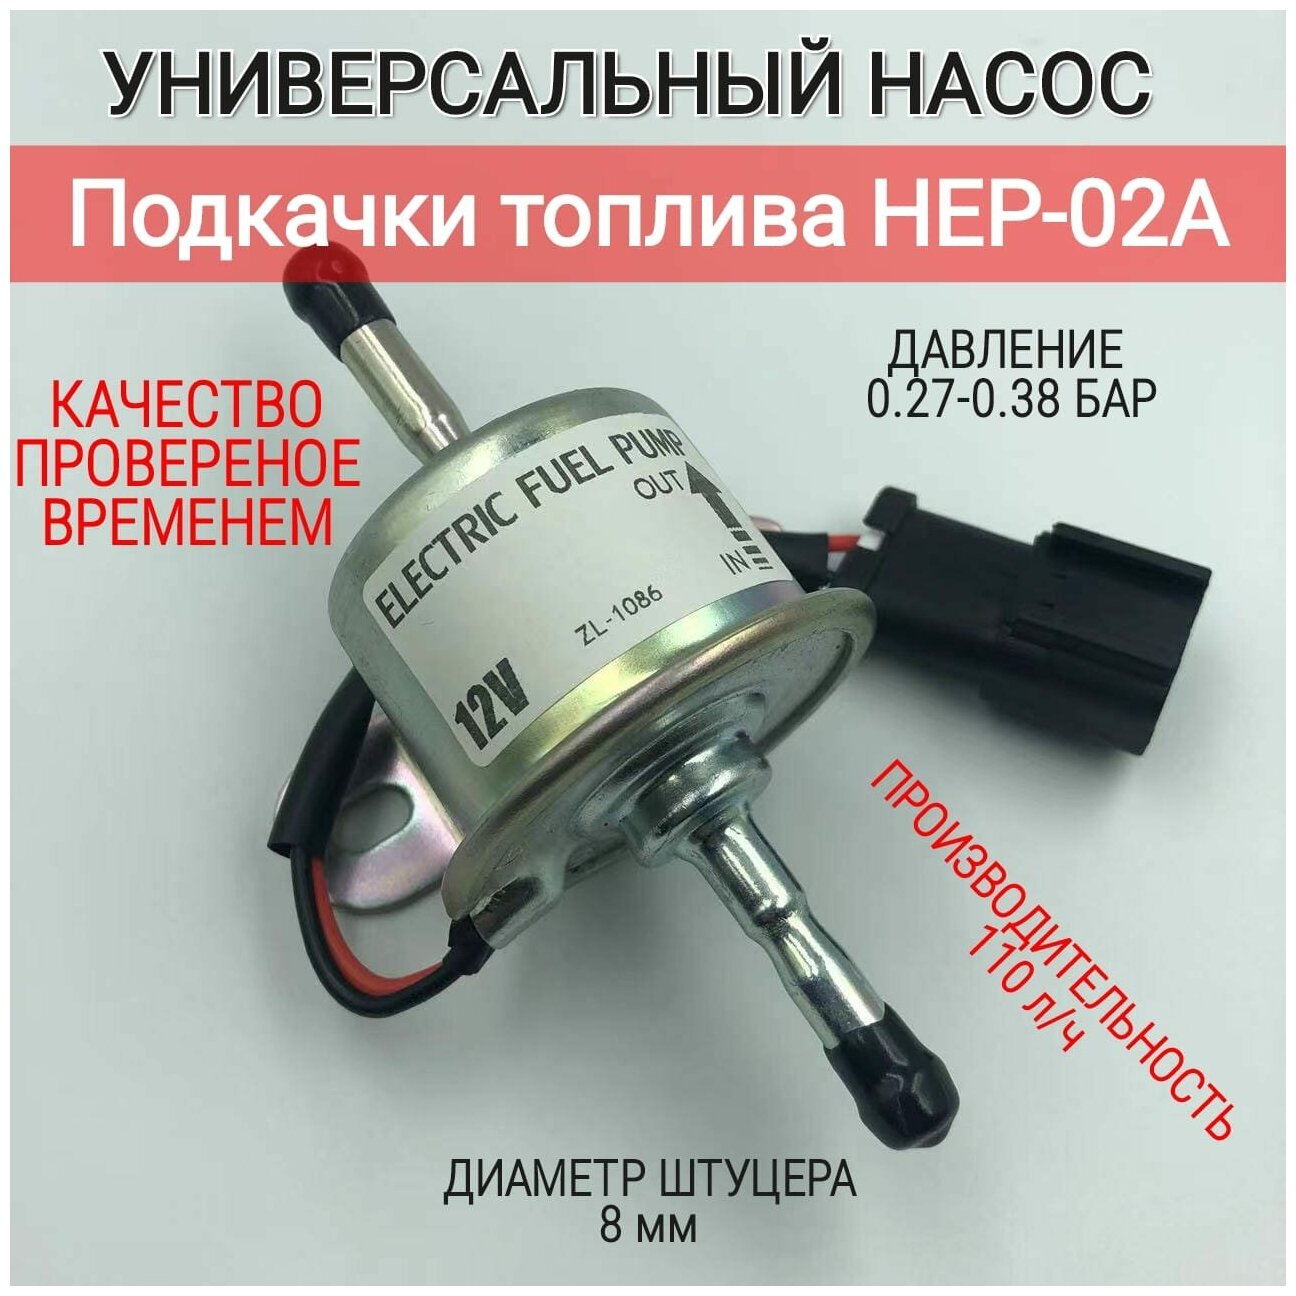 Универсальный насос подкачки топлива HEP-02A / Электрический топливный насос низкого давления / Электробензонасос - hep02a (DC 12v)